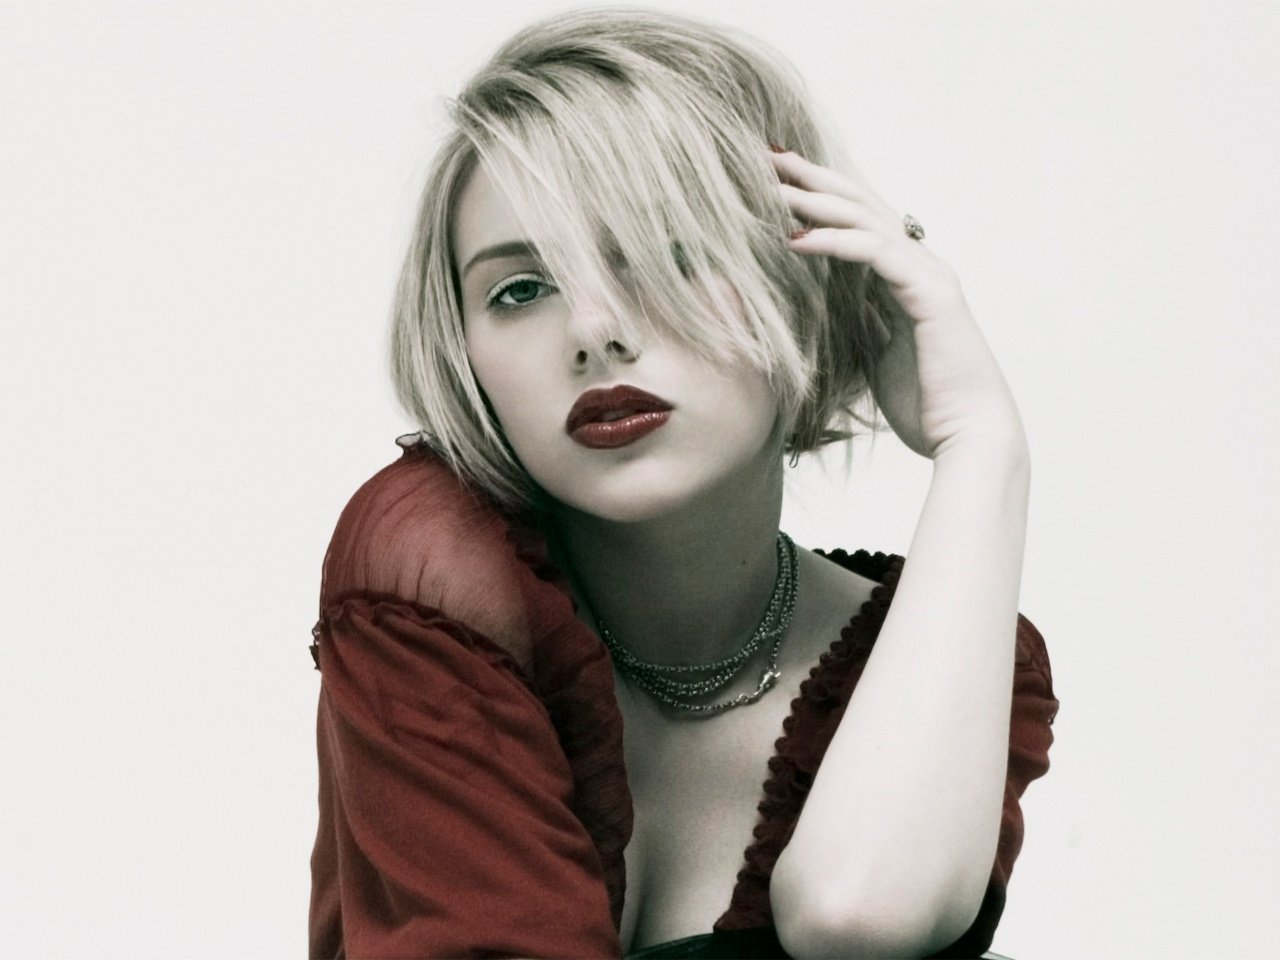 Скарлетт Йоханссон (Scarlett Johansson). Біографія. Фото. Особисте життя